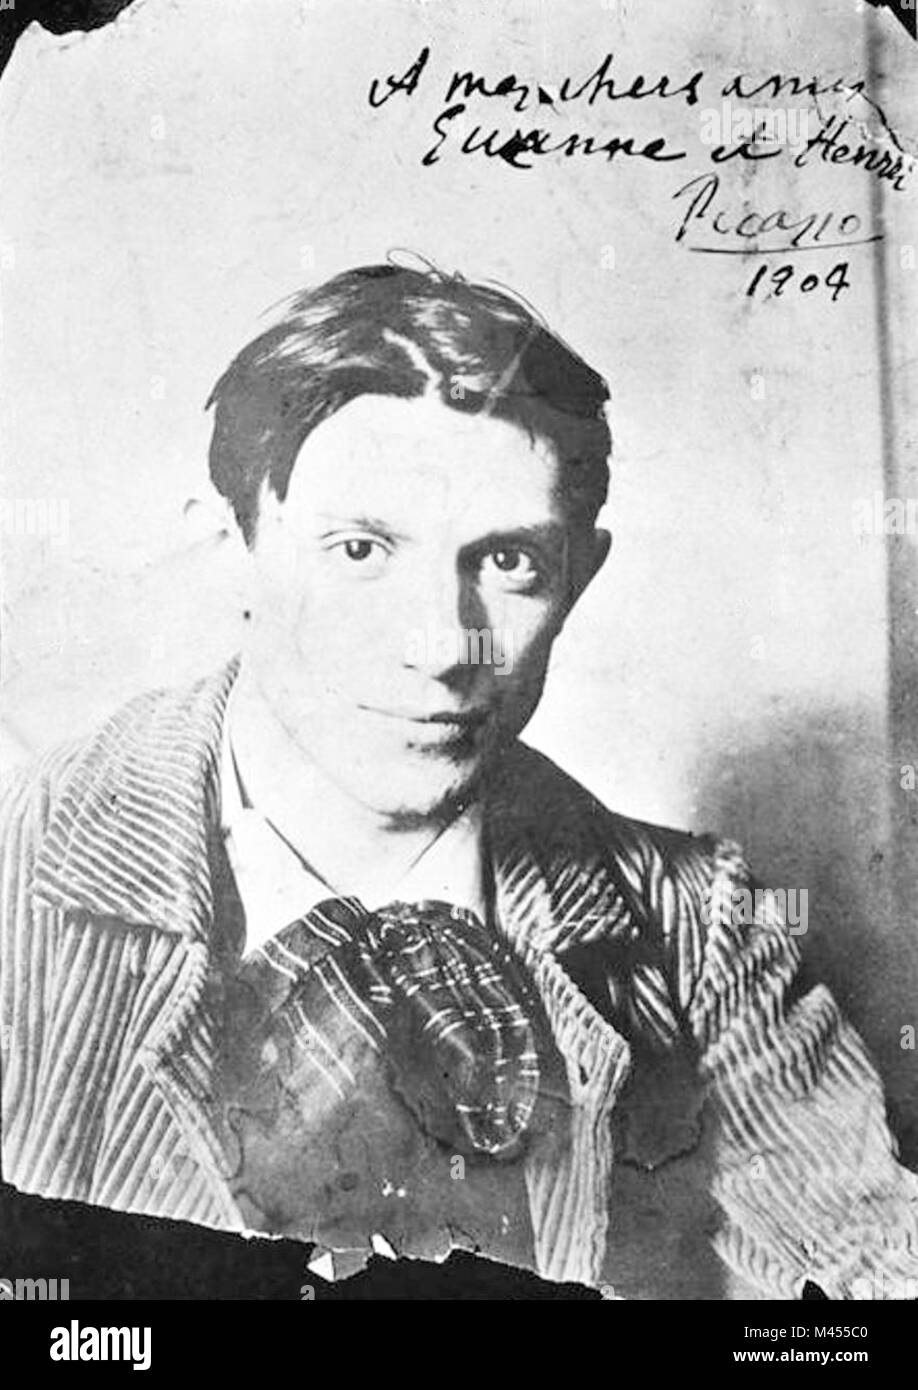 Plus de détails Picasso en 1904. Photographie par Ricard Canals. Banque D'Images